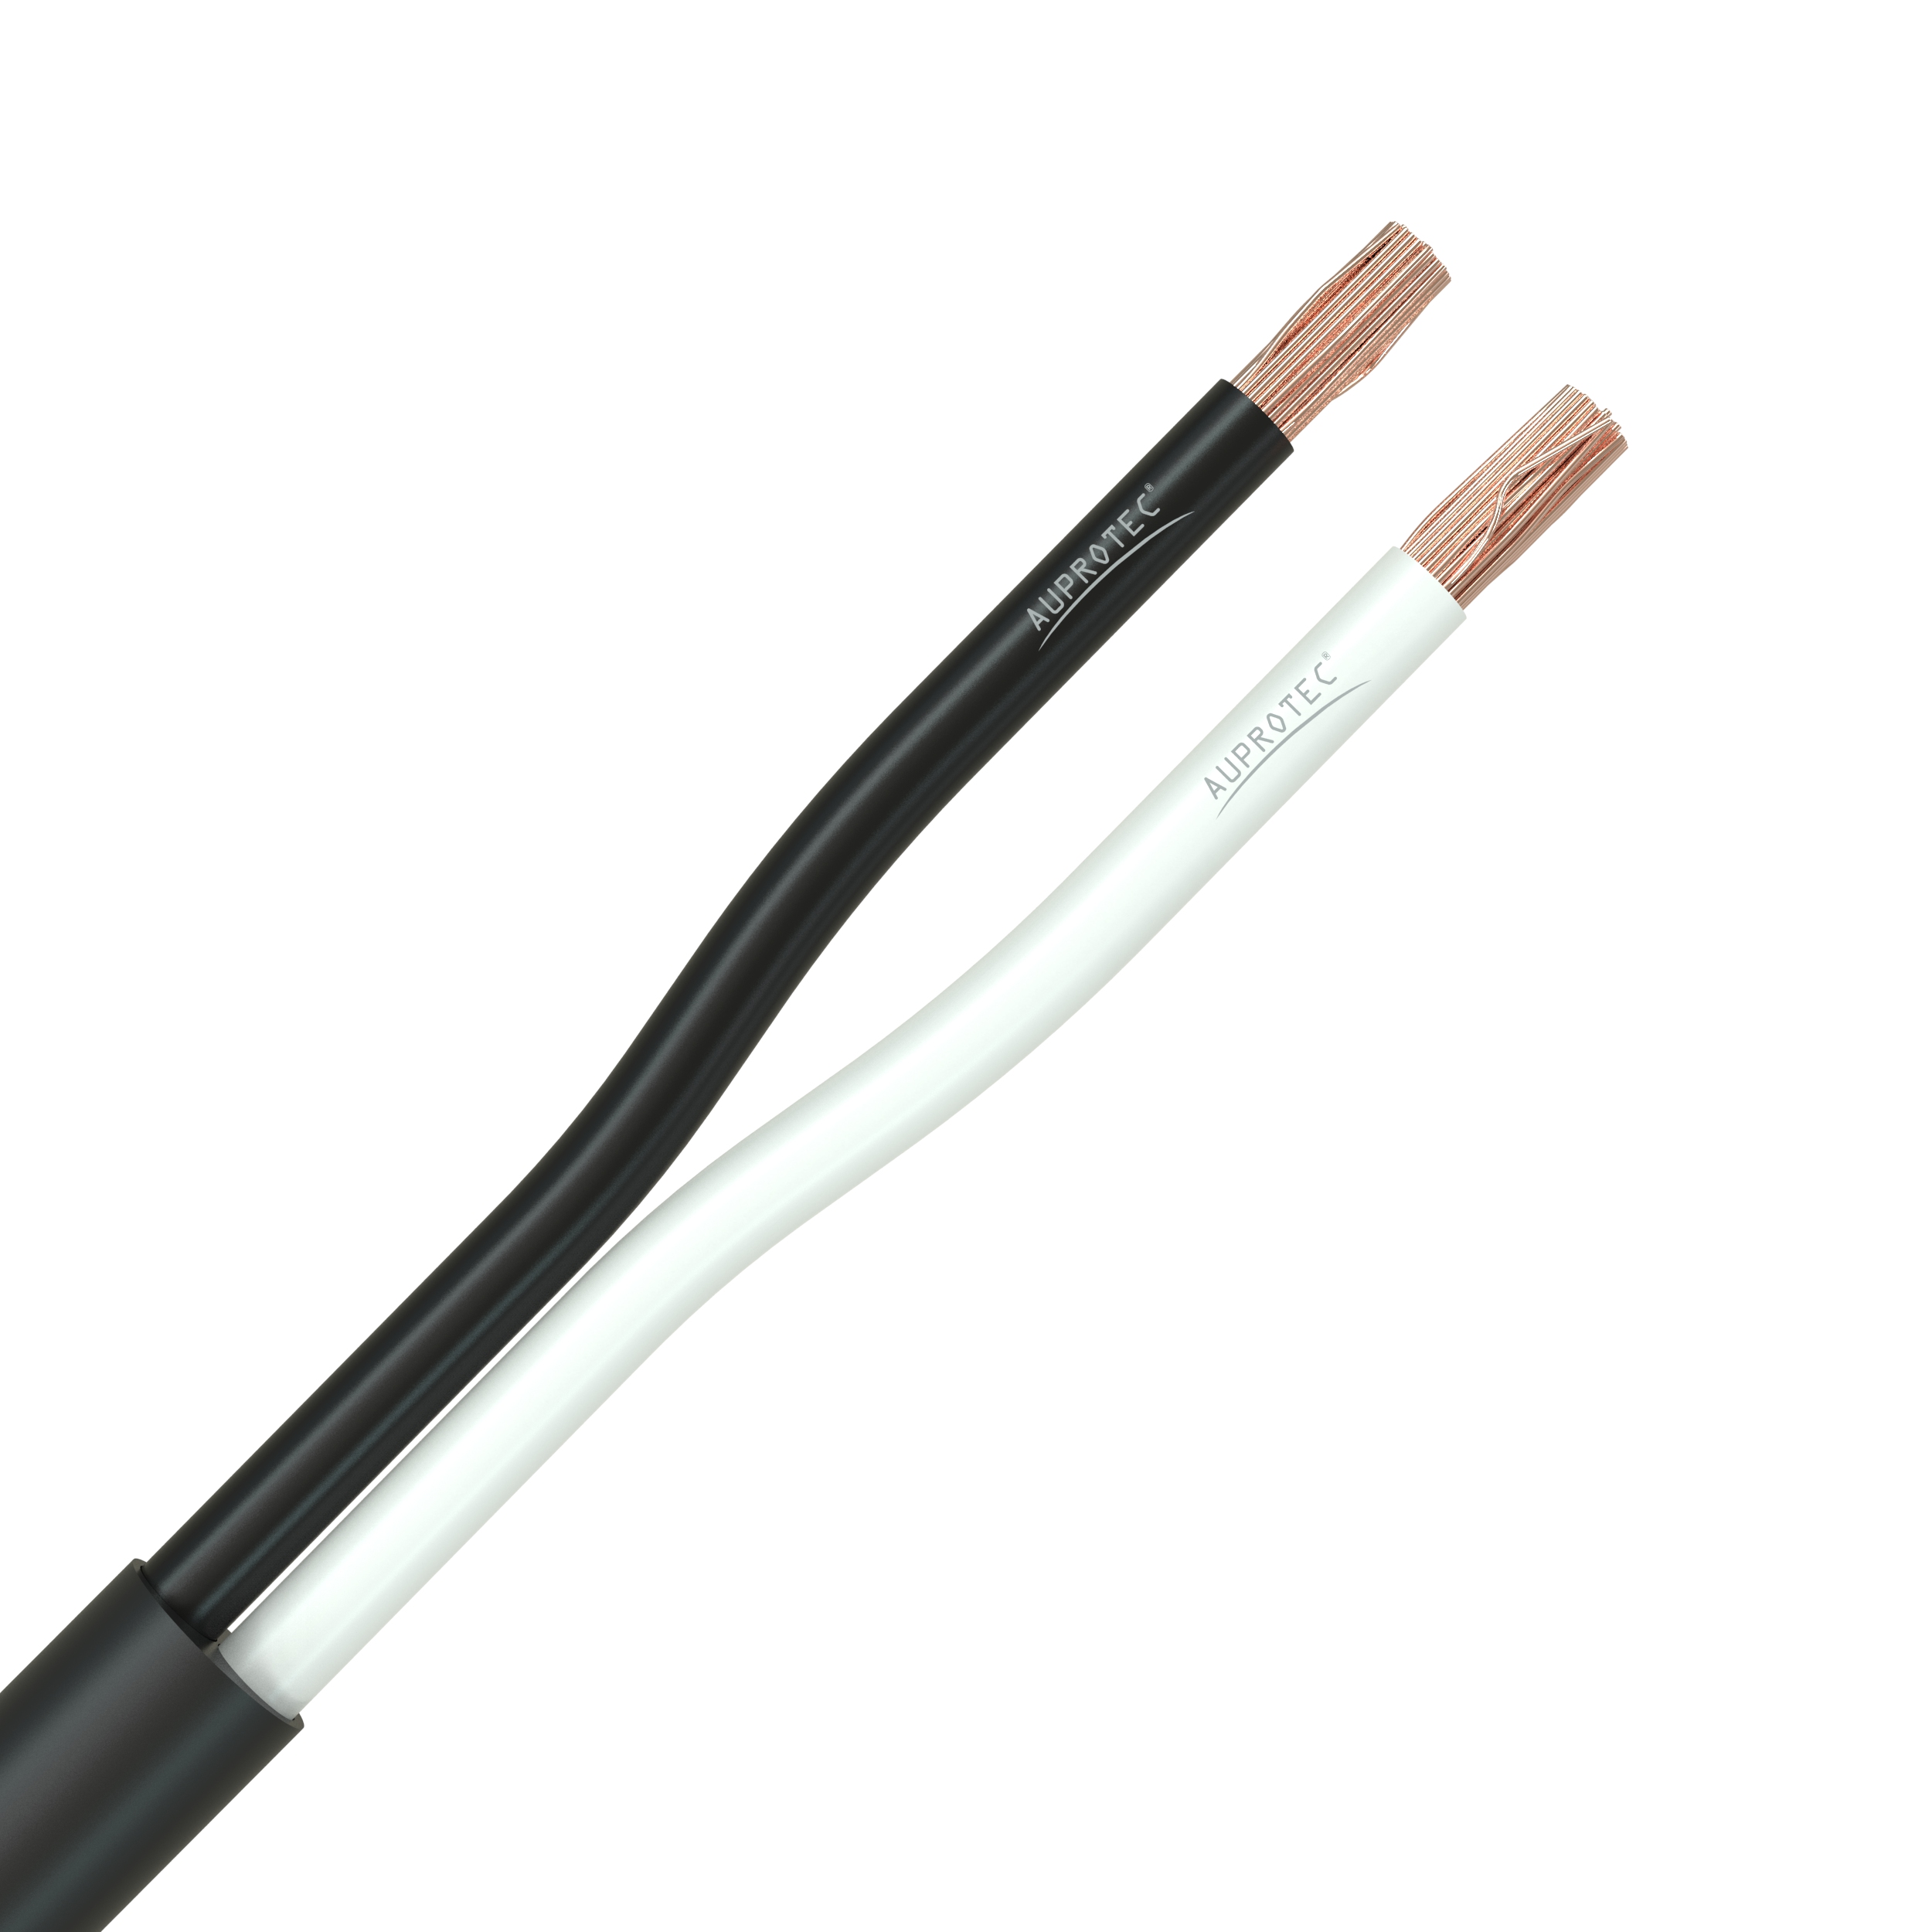 Rundkabel 2 x 05 mm Kfz Kabel 2 poligadrig Meterware Meterware als Bund -  Produktbewertungen bei auprotec.com